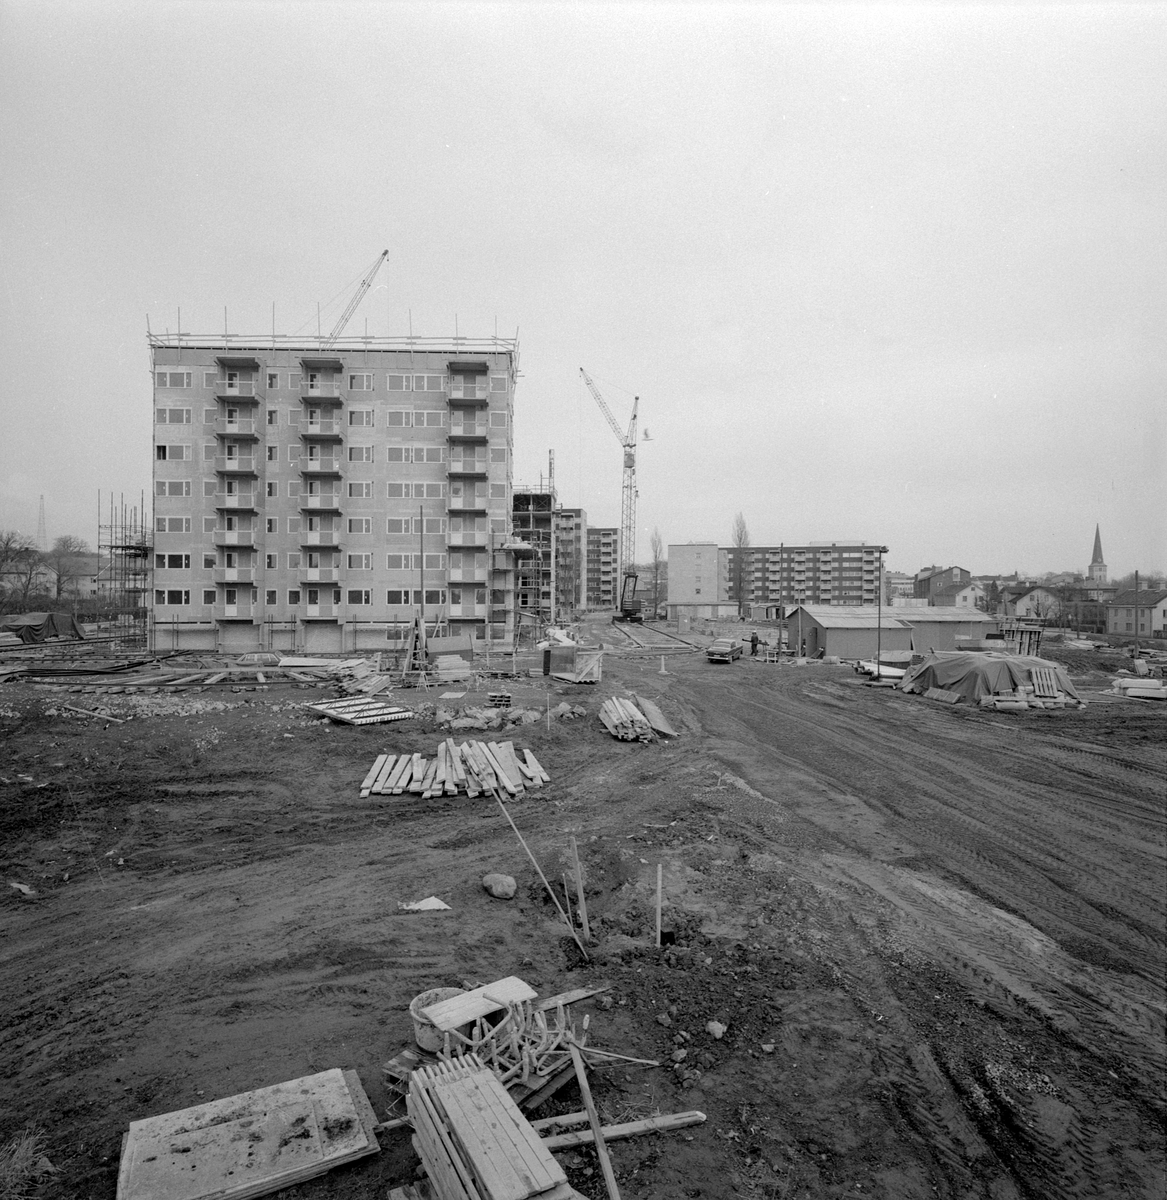 Mars månad 1973 och bebyggelsen i västra delen av Gamla stan i Motala är under förändring. Bilden visar de blivande punkthusen utmed Drottninggatan under uppförande.